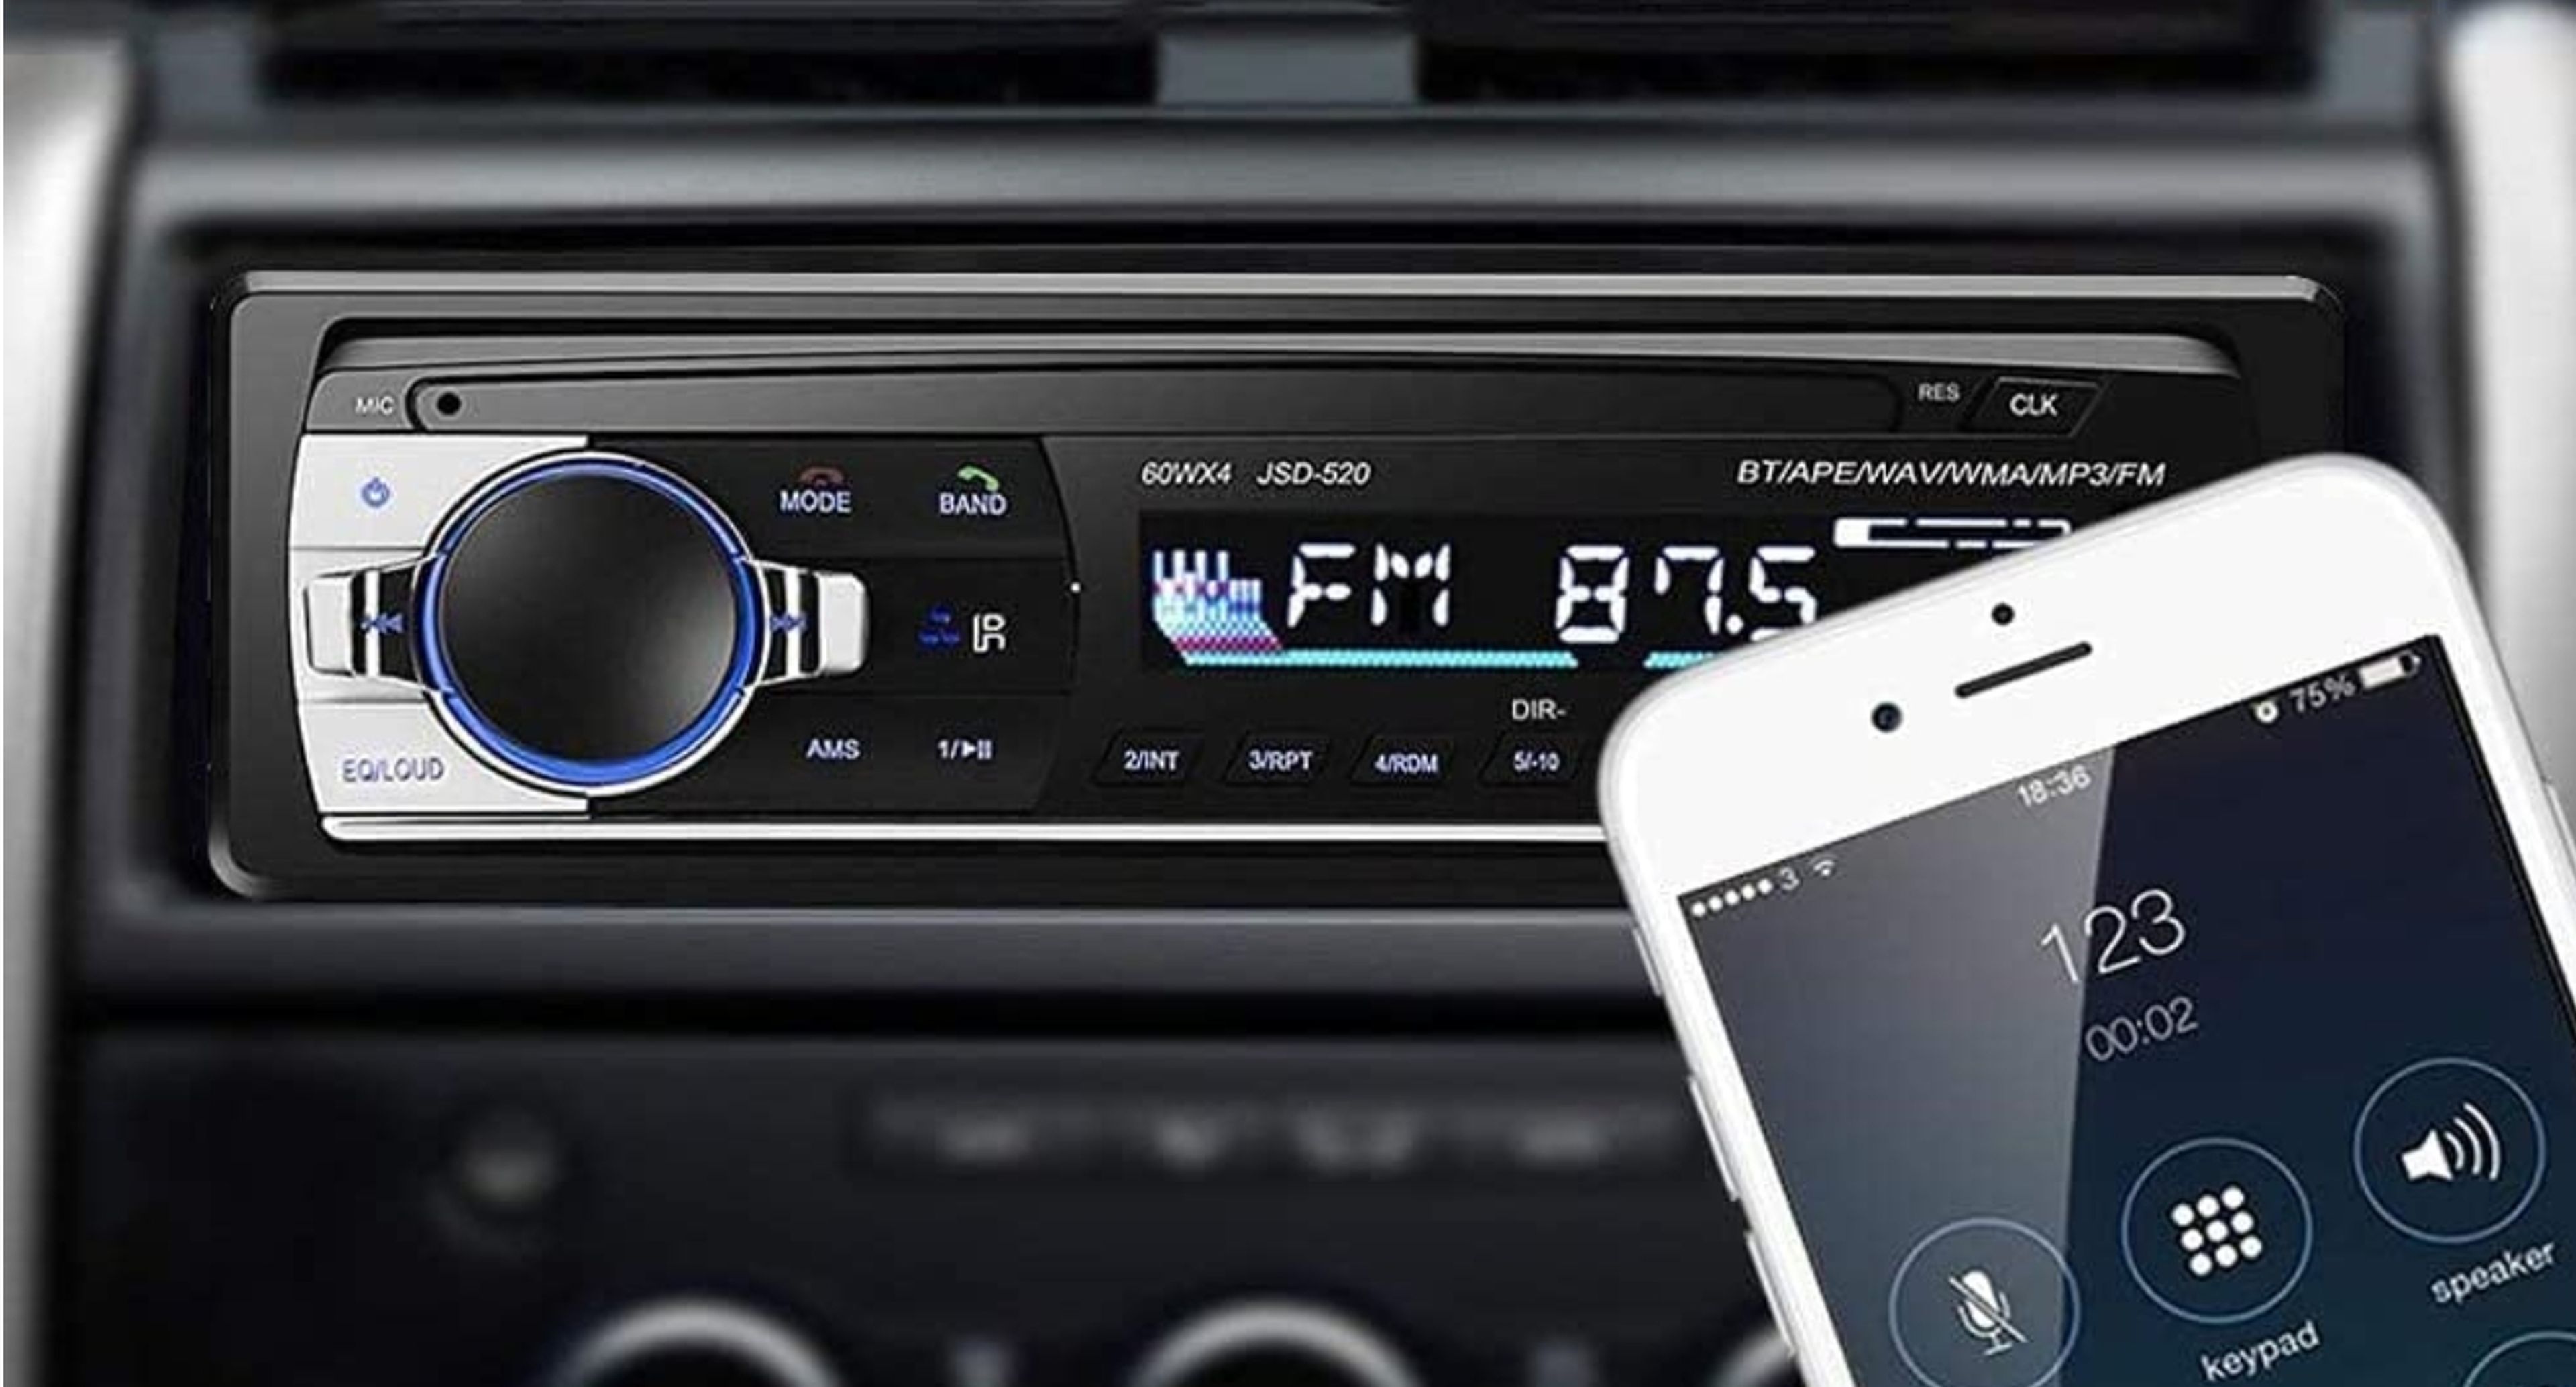 Cambiar la radio del coche: consejos para instalar una nueva radio